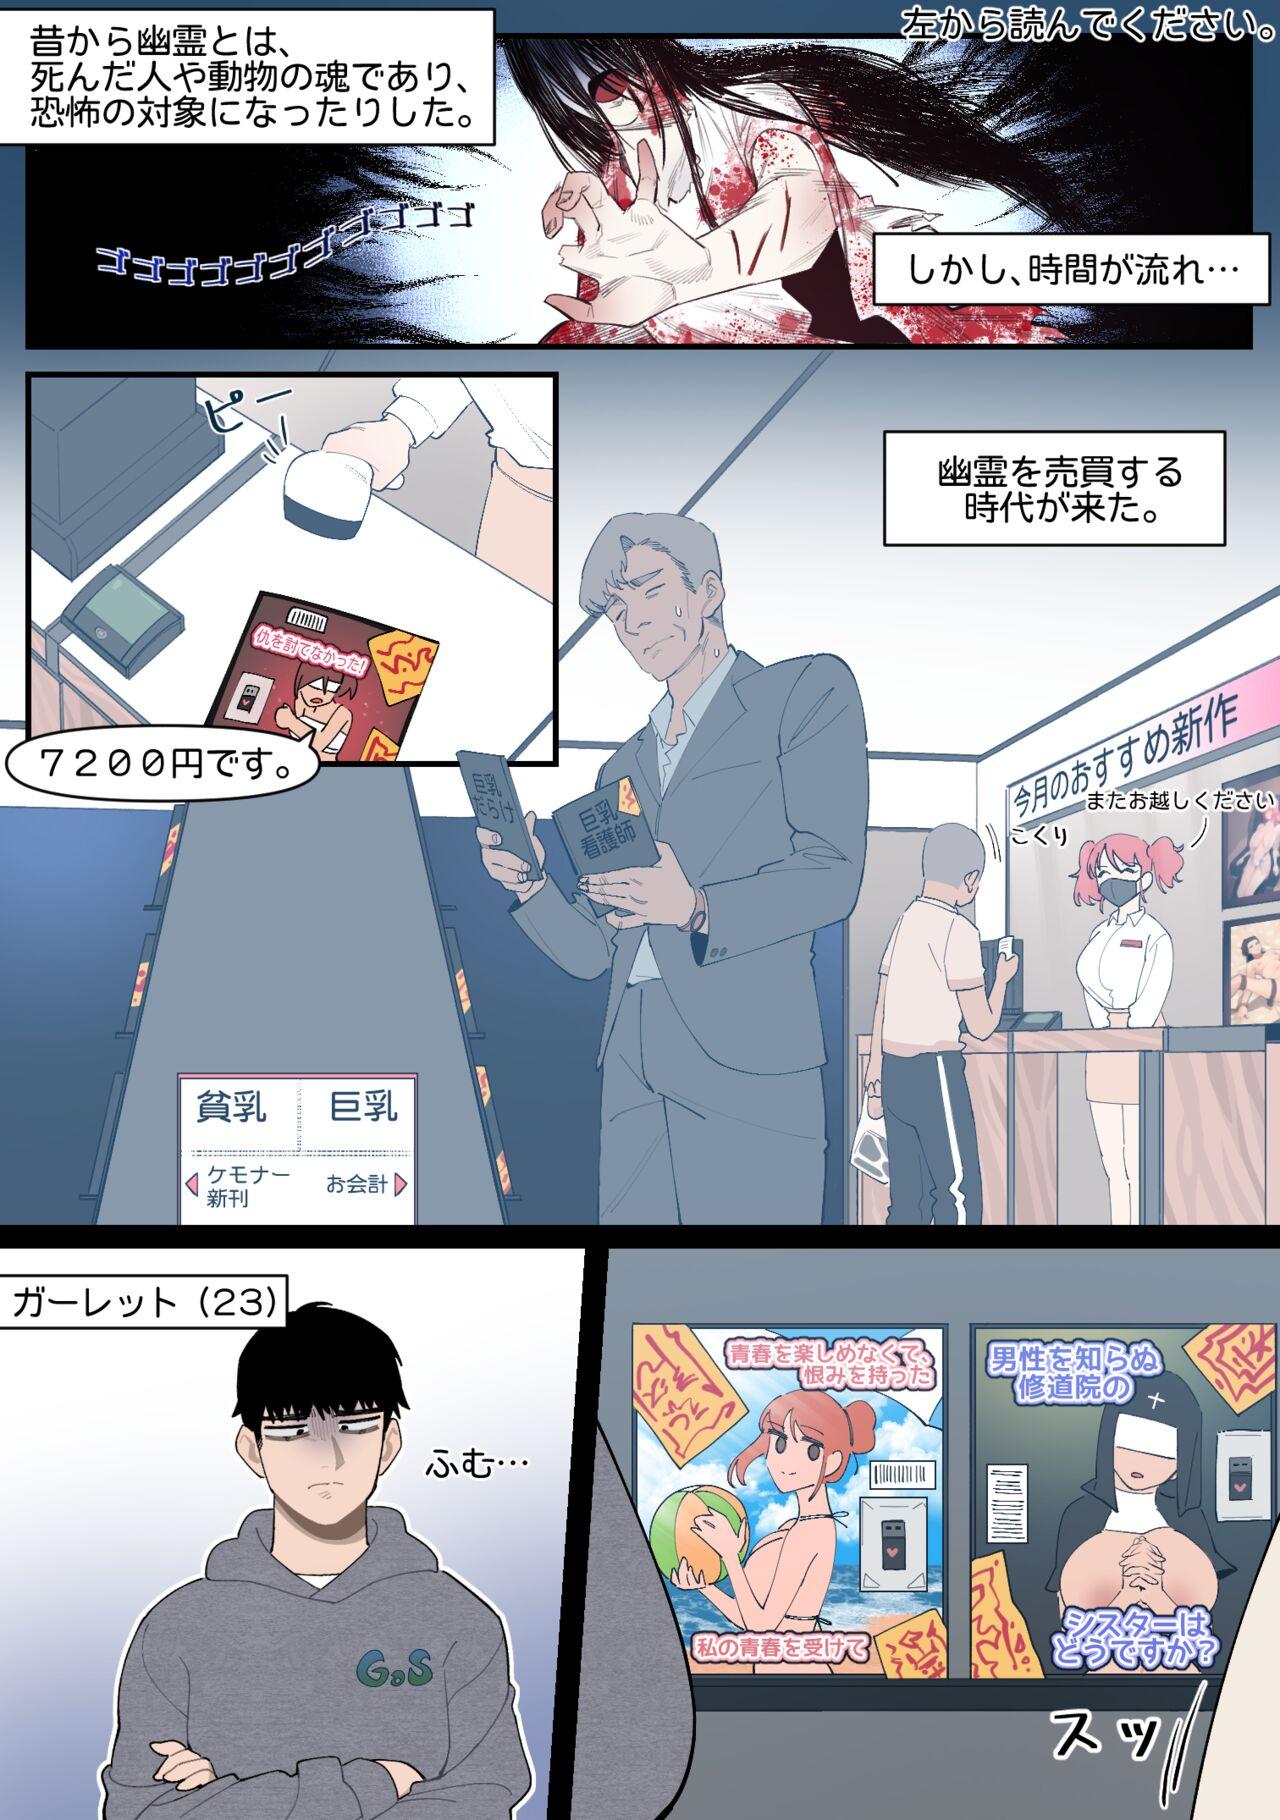 Ruiva 22.10 - Original Anime - Page 1